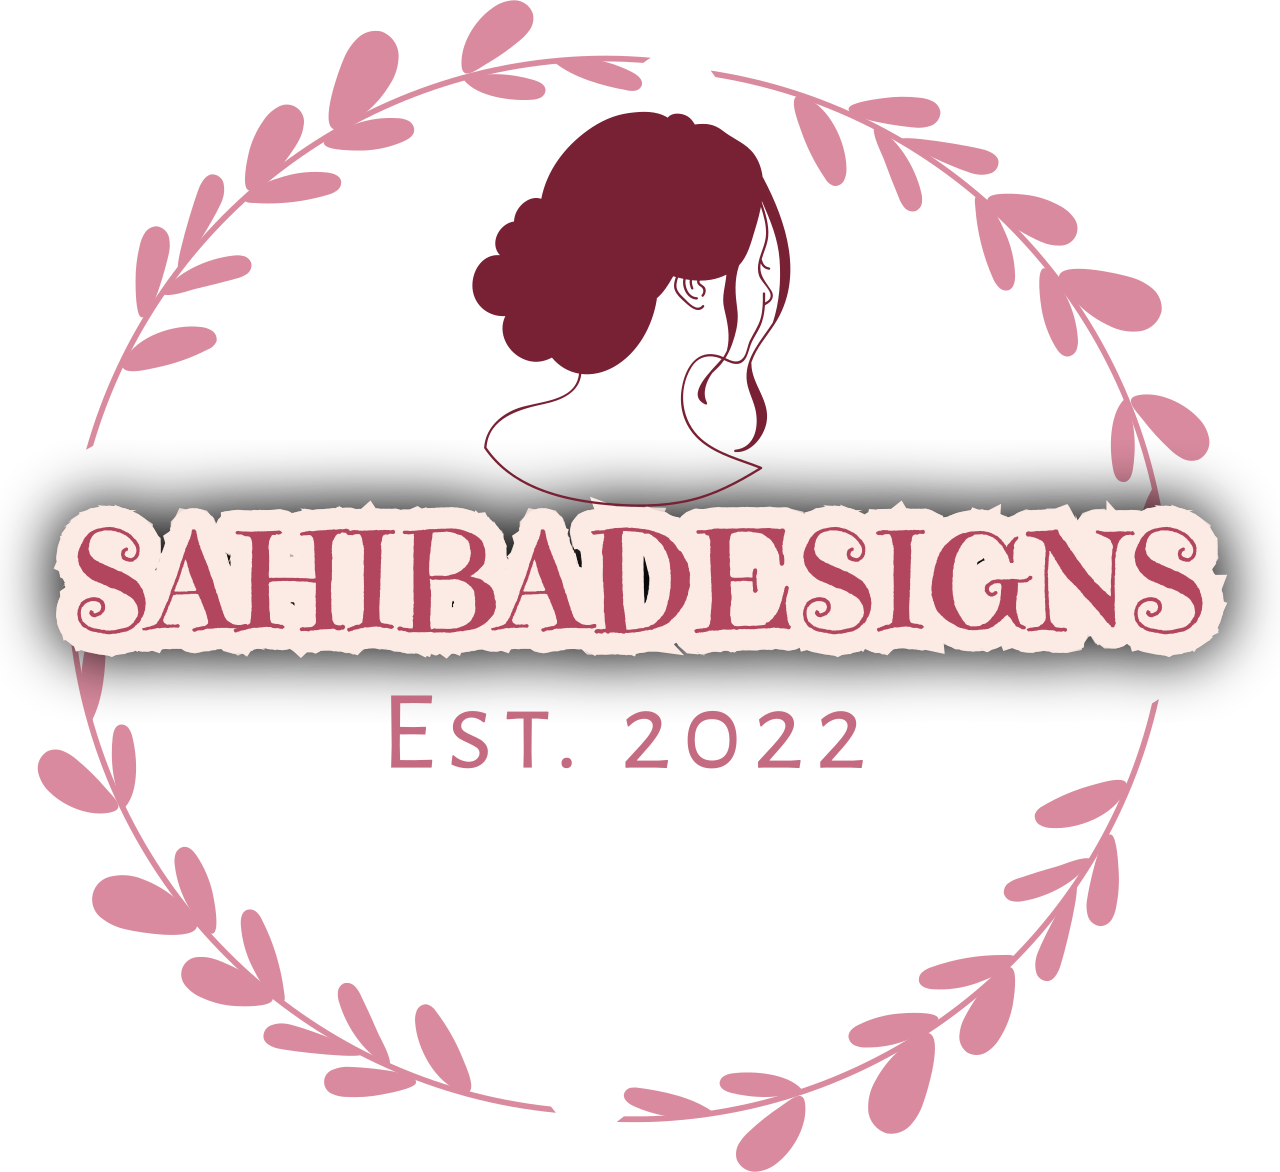 Sahibadesigns 's logo